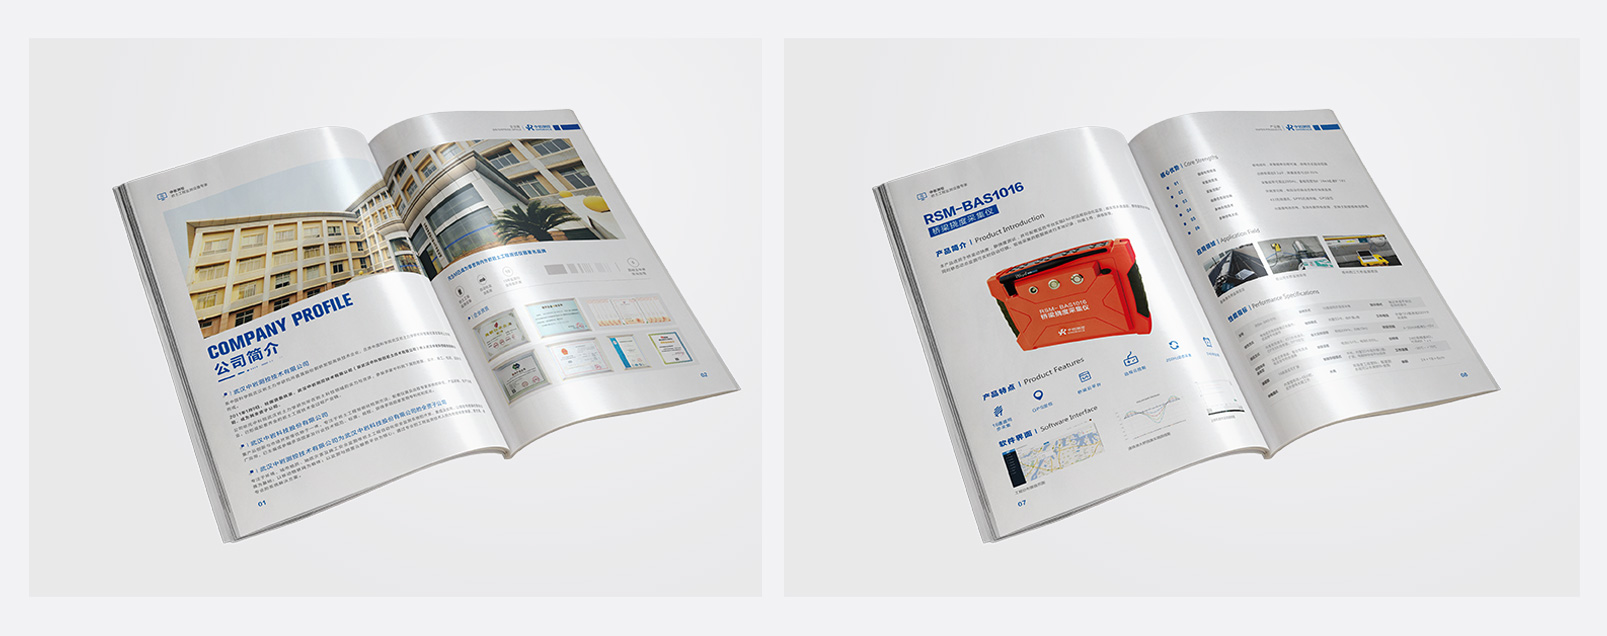 科技畫冊:科技產品畫冊設計_科技宣傳手冊設計制作案例